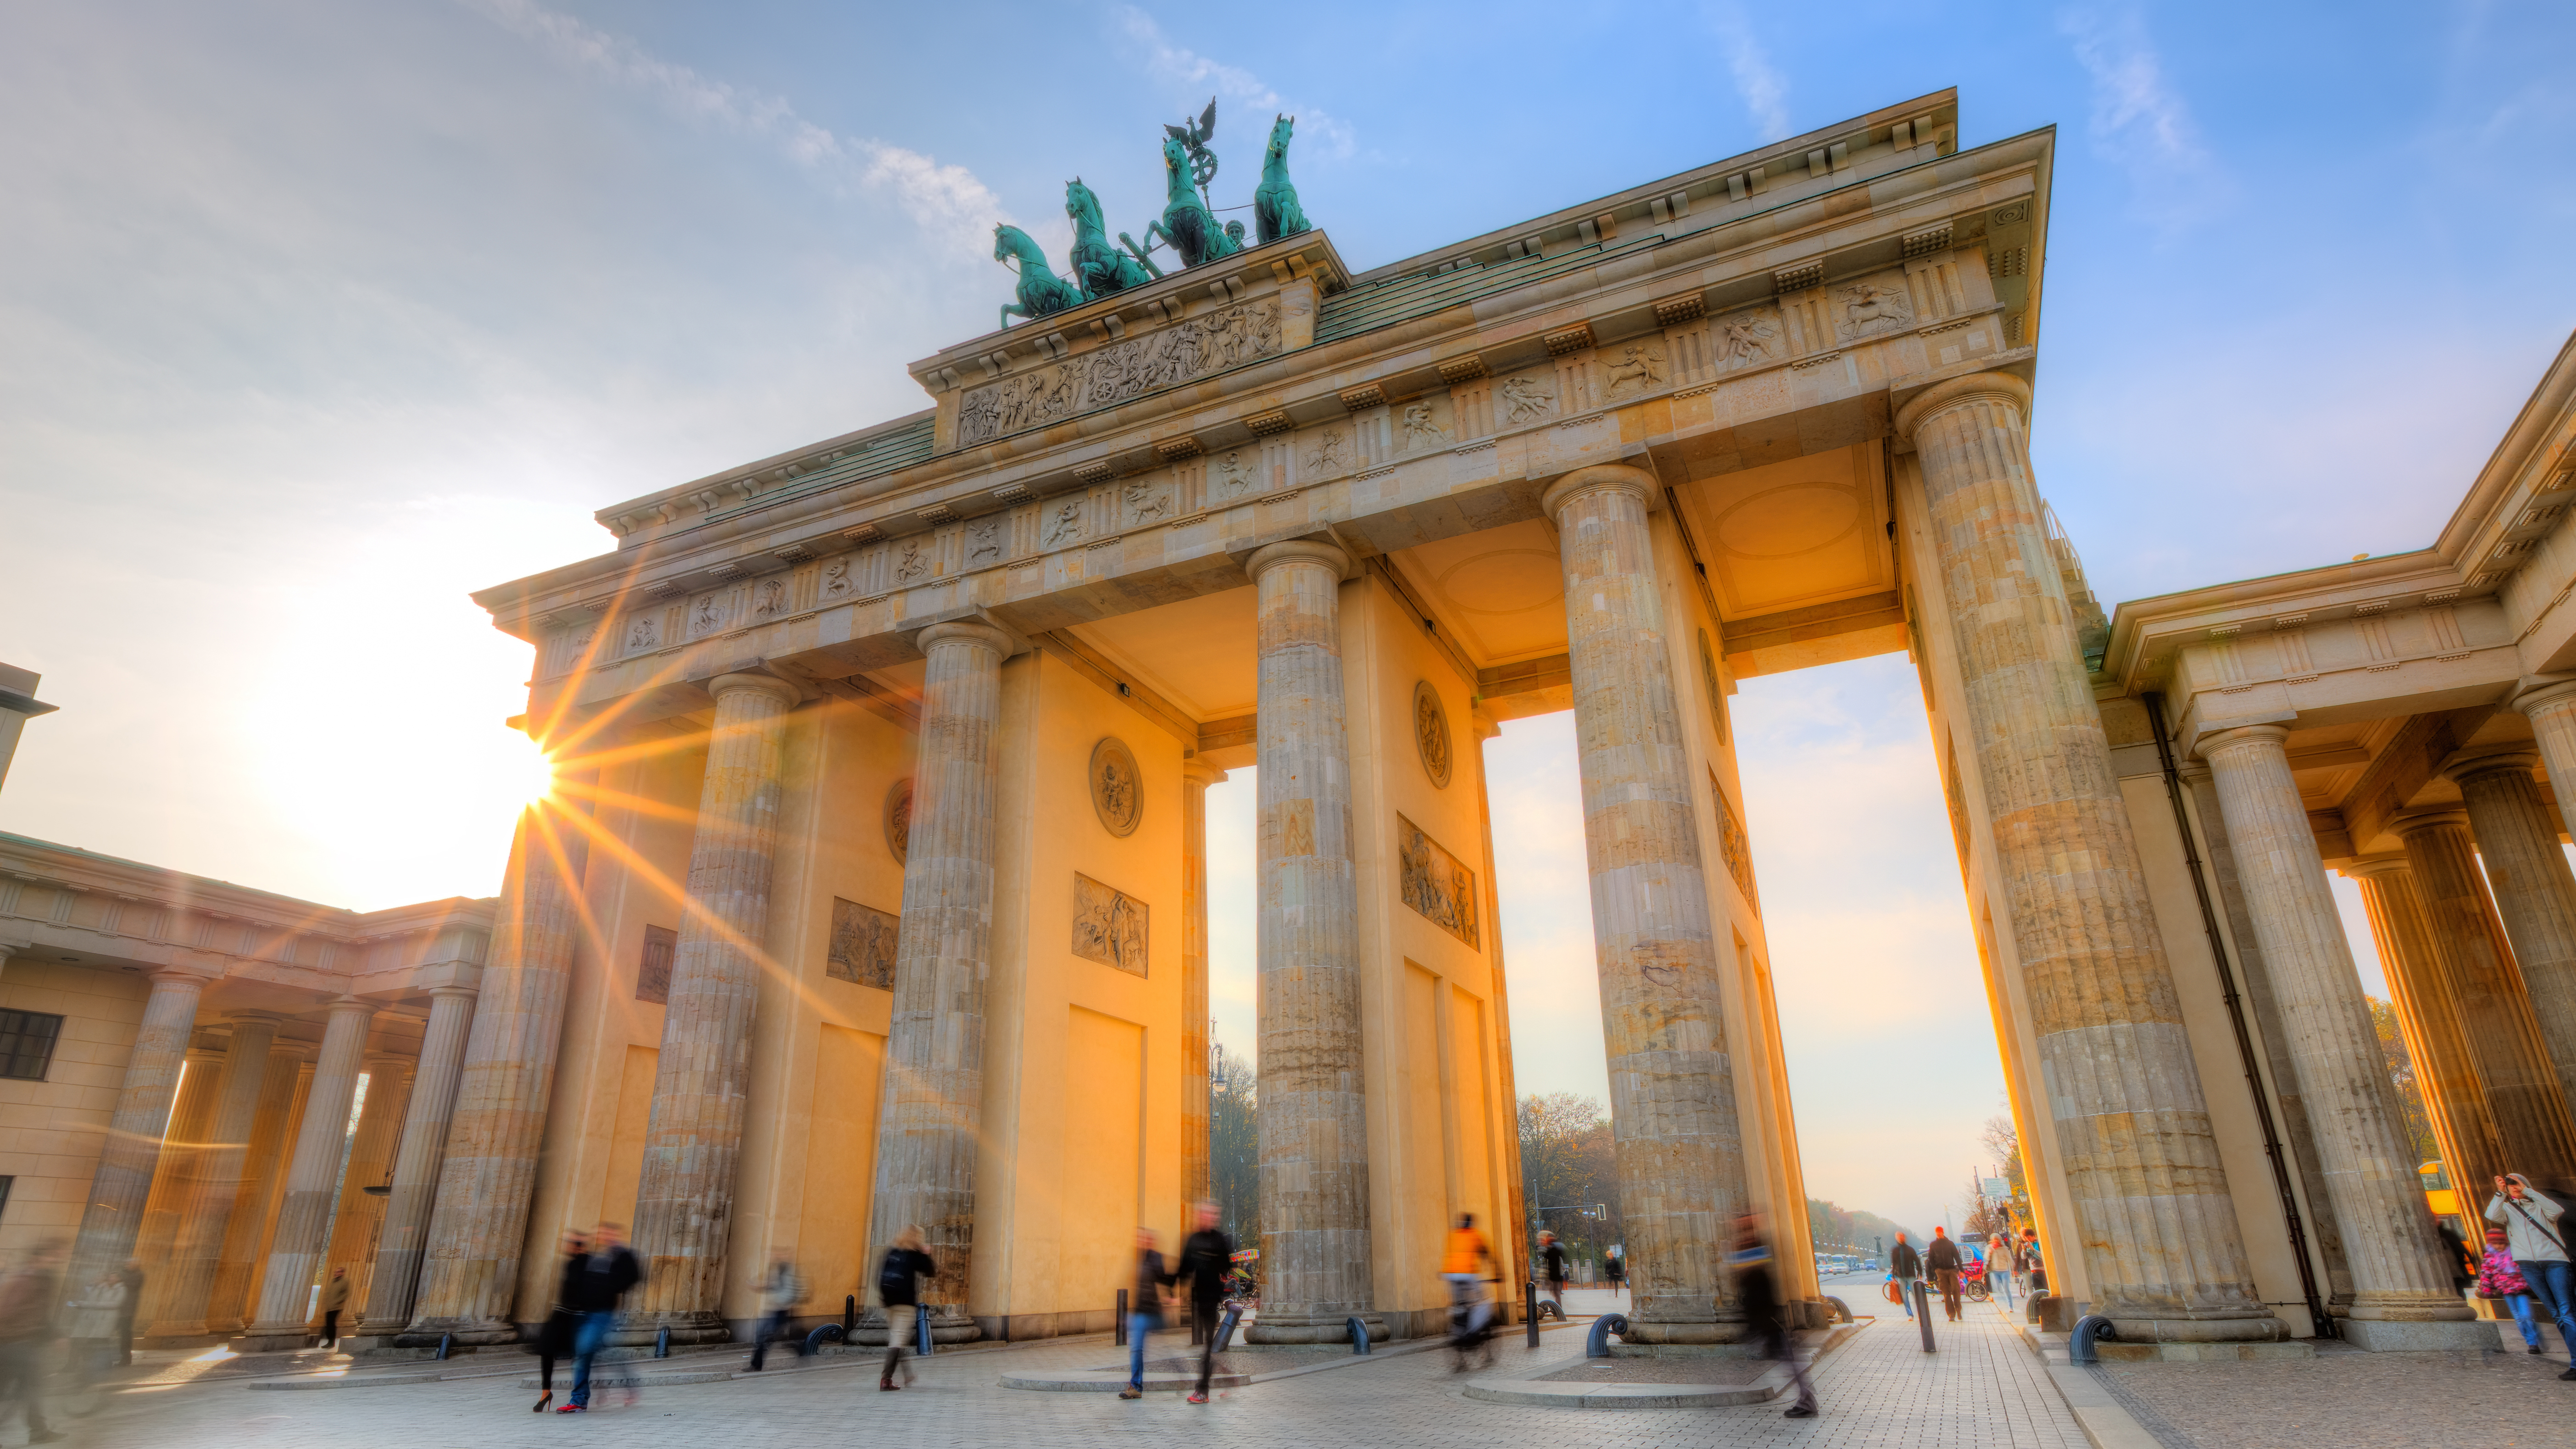 Бранденбургские ворота, как символ Германии, ВНЖ которой могут получить россияне